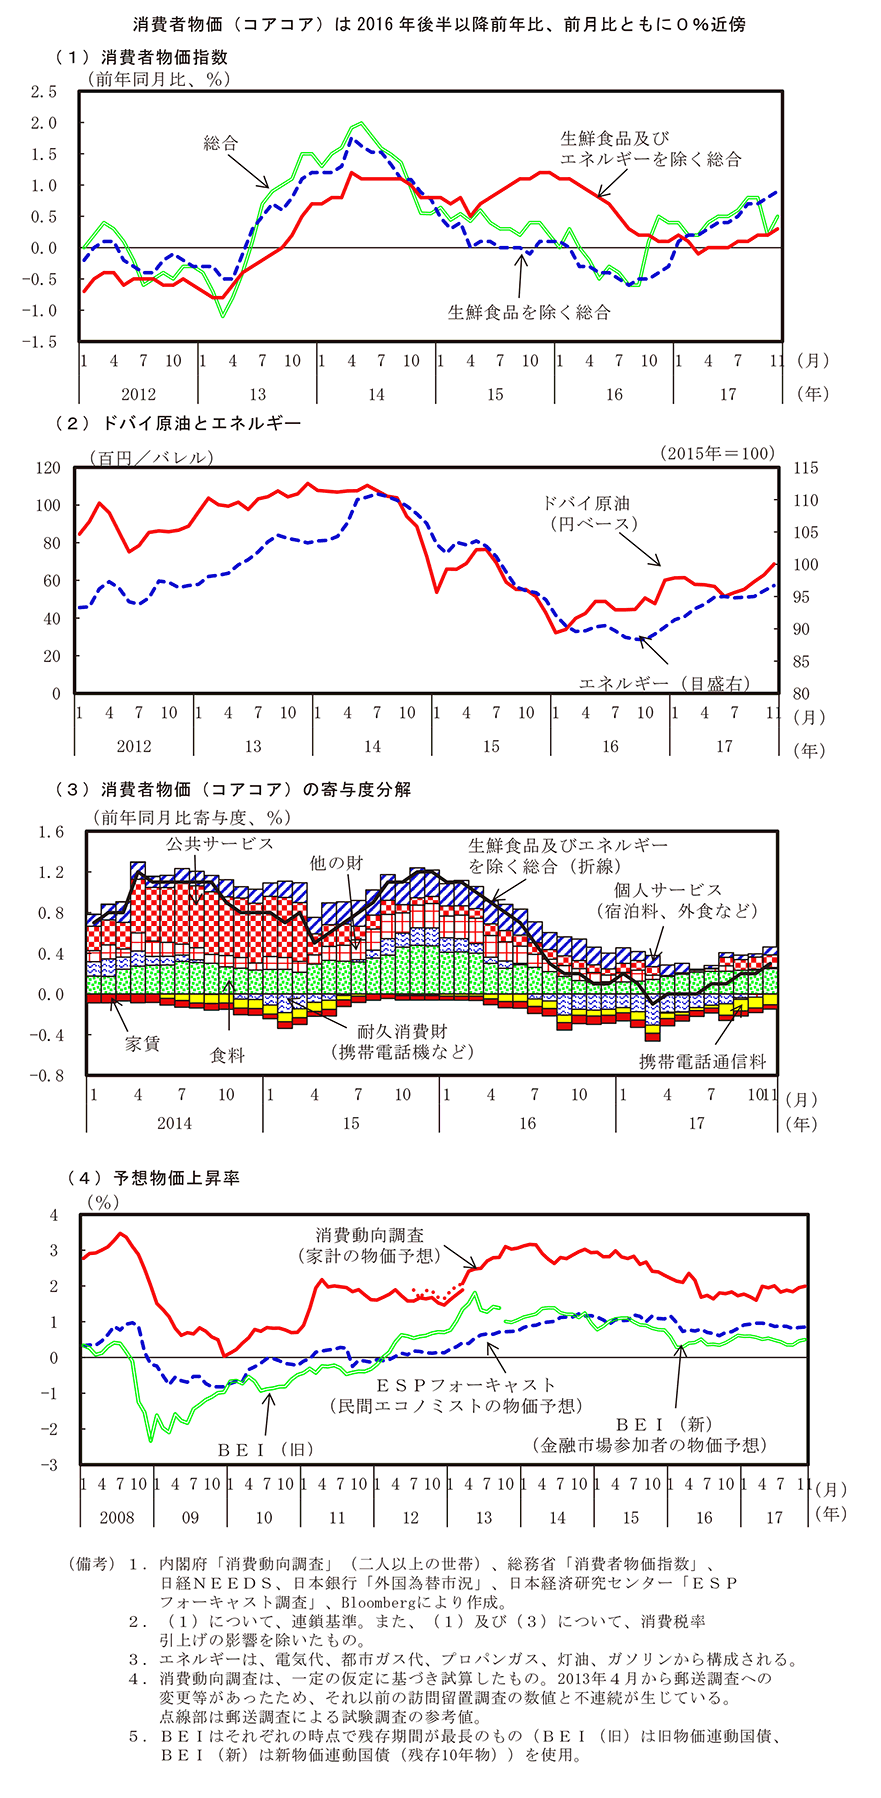 第1－3－1図　物価関連指標の動向 のグラフ